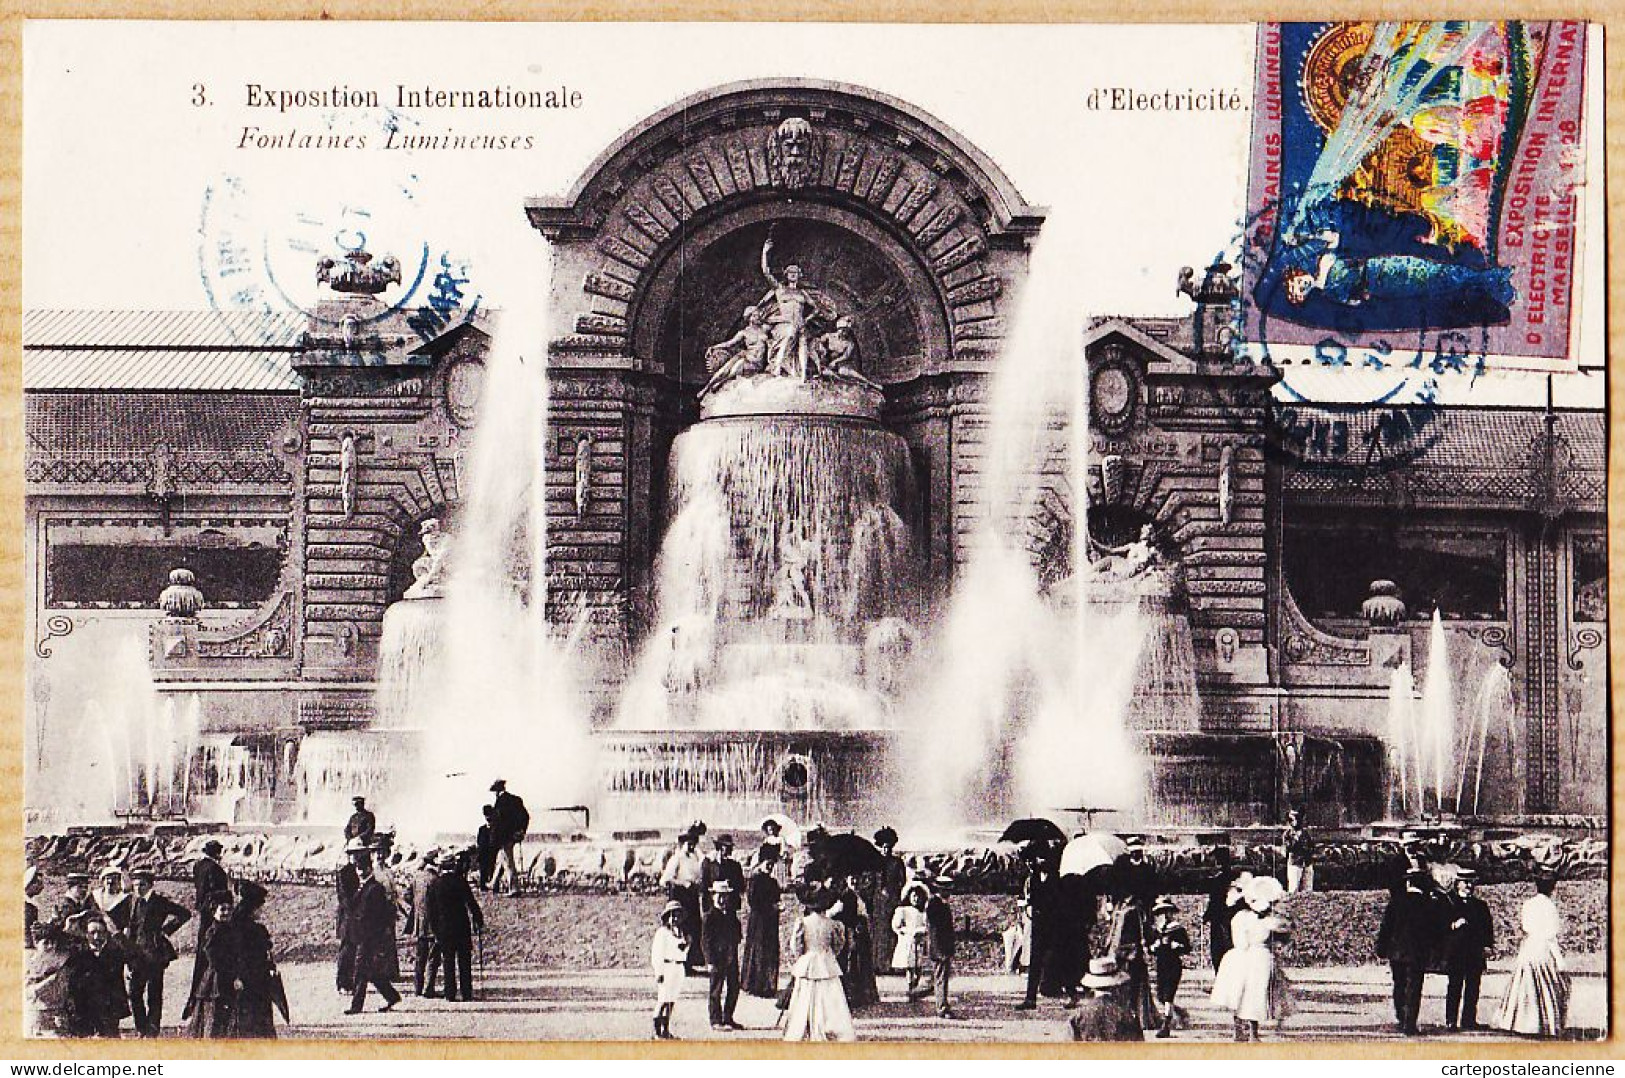 35032 / MARSEILLE Fontaines Lumineuses Exposition Internationale Electricité 1908 Vignette Expo-Photo BAUDOUIN-VINCENT  - Mostra Elettricità E Altre